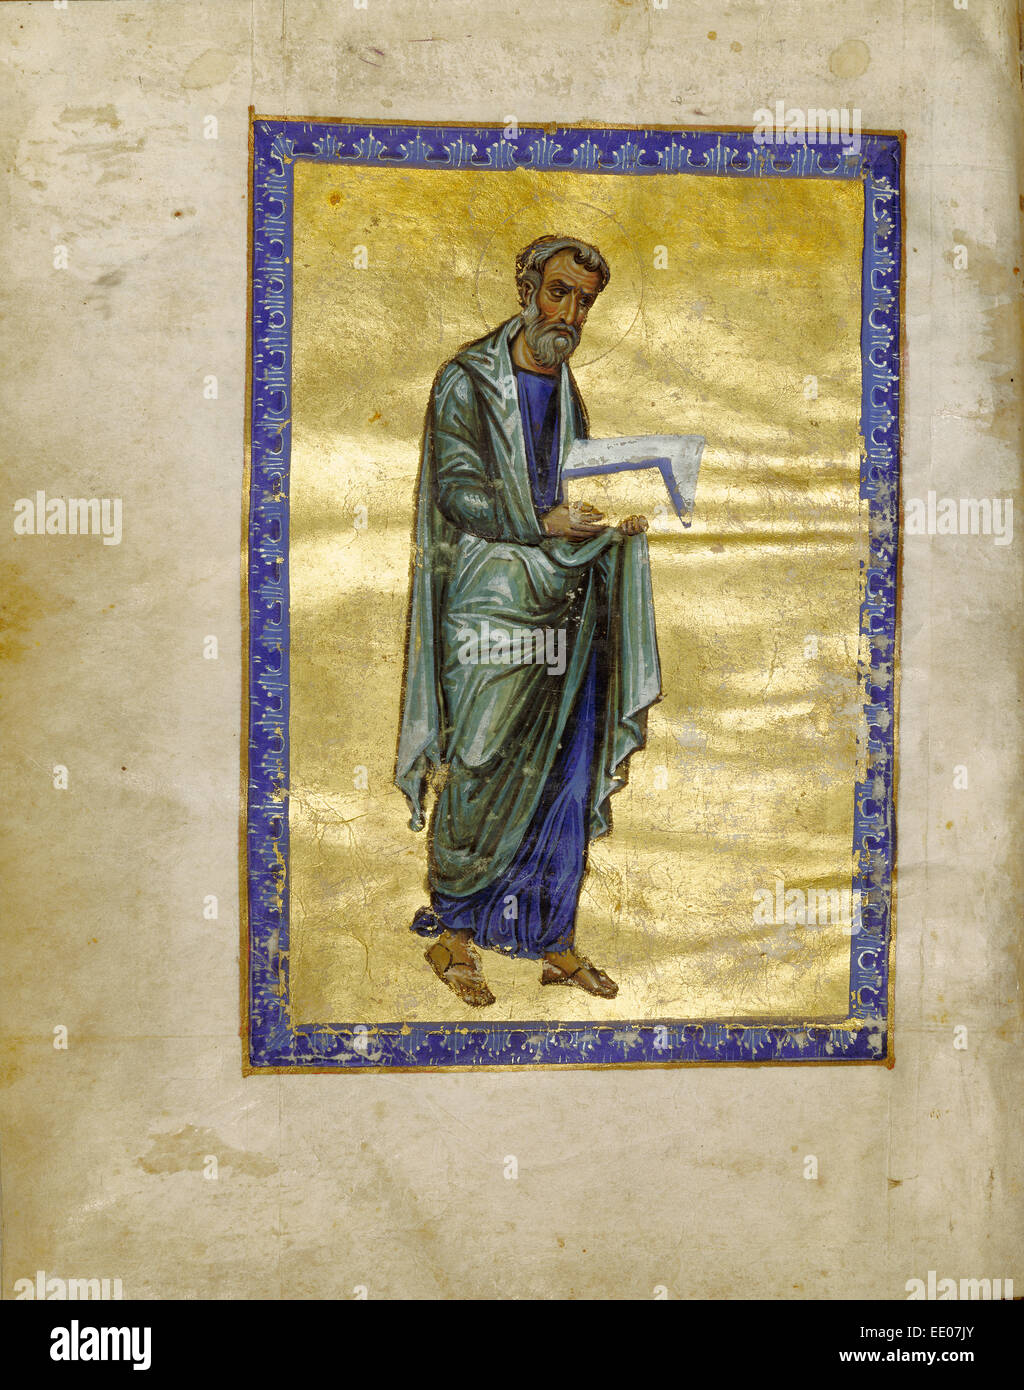 Saint Matthieu ; inconnu ; Constantinople, Turquie, Asie ; 1133 Tempera ; couleurs, feuille d'or, d'or, peinture et encre sur parchemin Banque D'Images